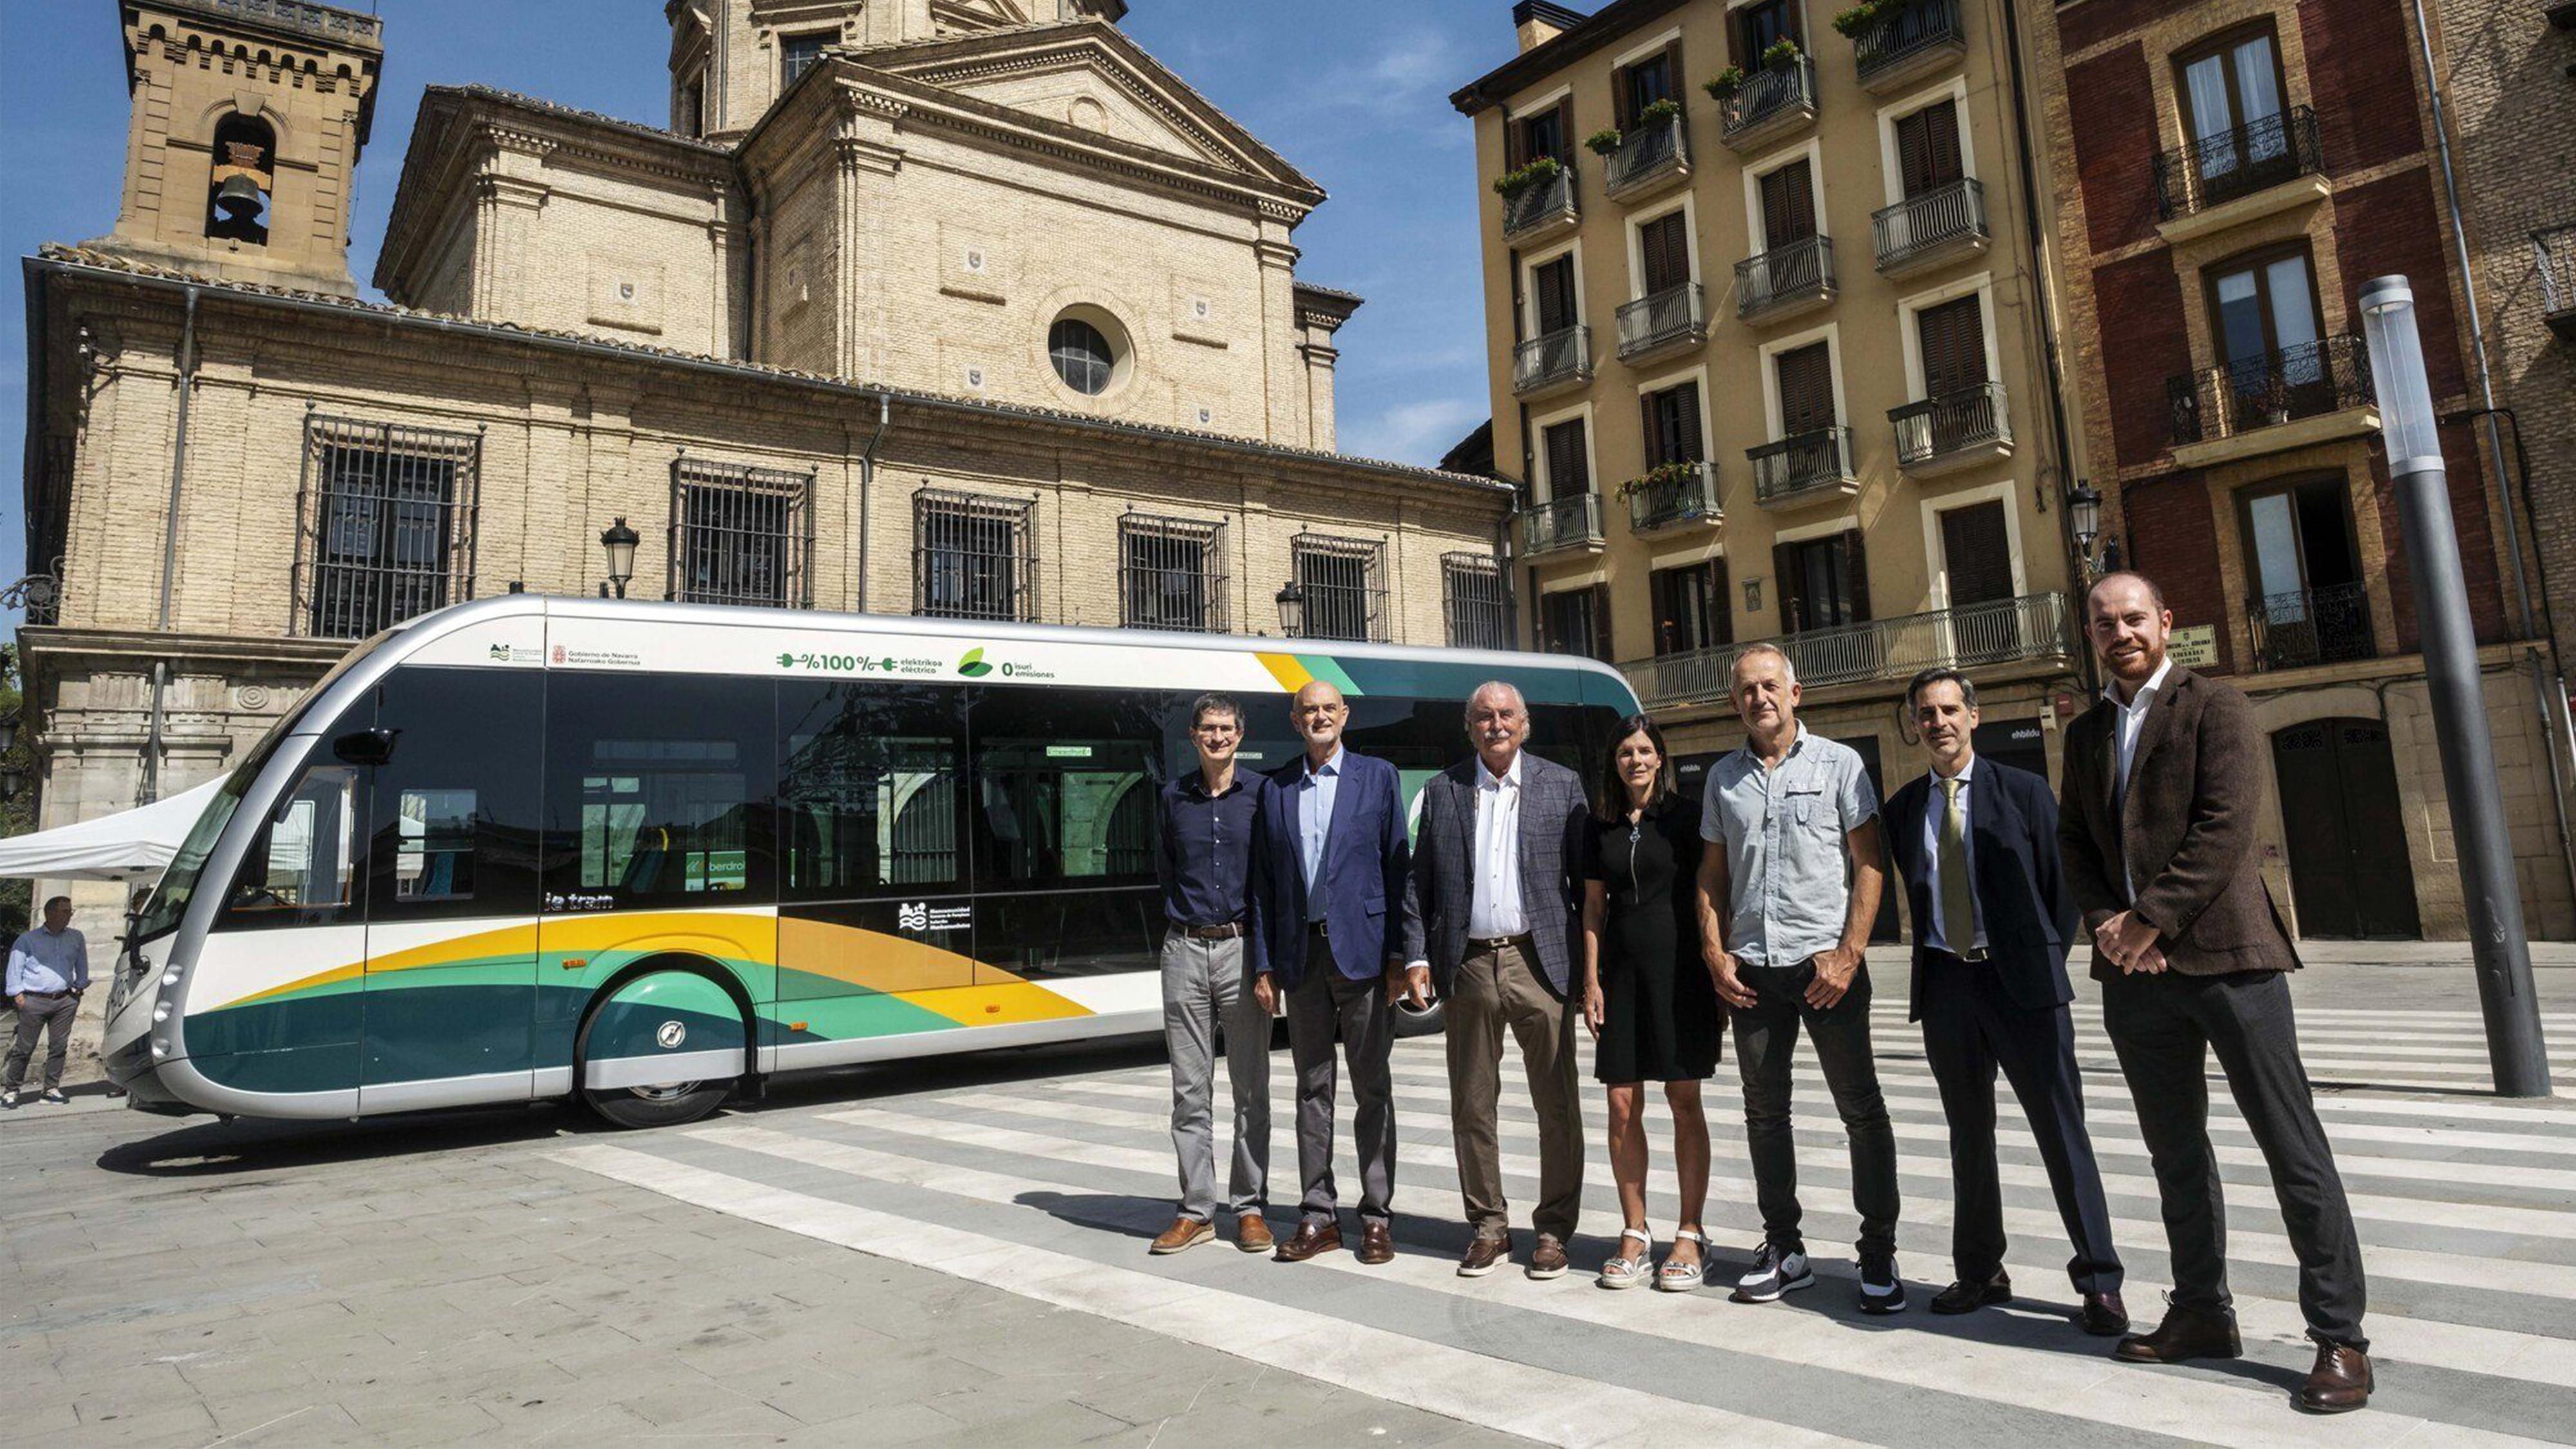 Wir hatten das Vergnügen, bei der Präsentation der neuen Busse von Transports Ciutat Comtal (TCC) der Moventis-Gruppe in Pamplona dabei zu sein